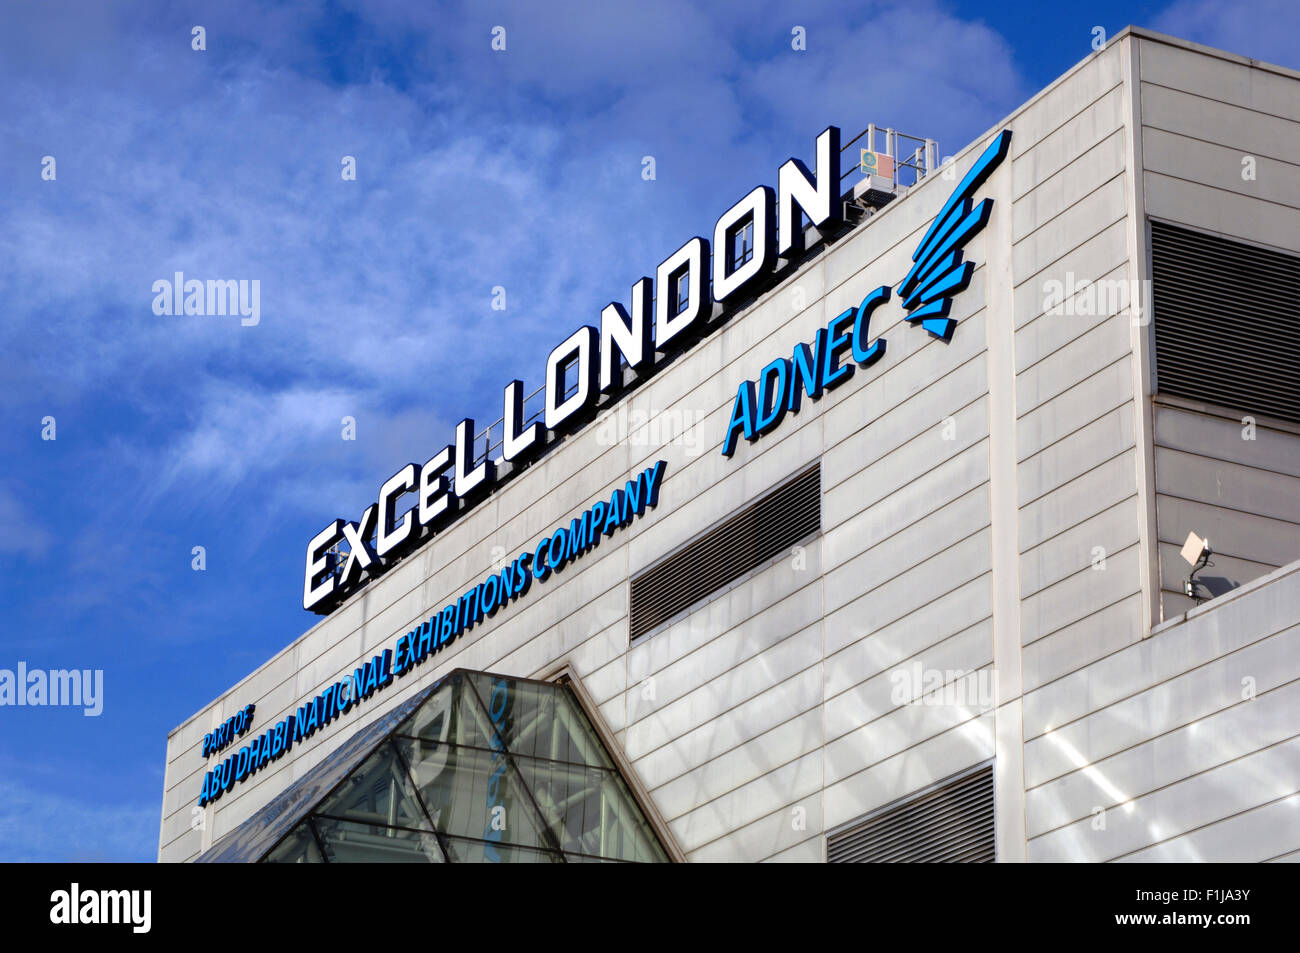 Excel arena London Stock Photo